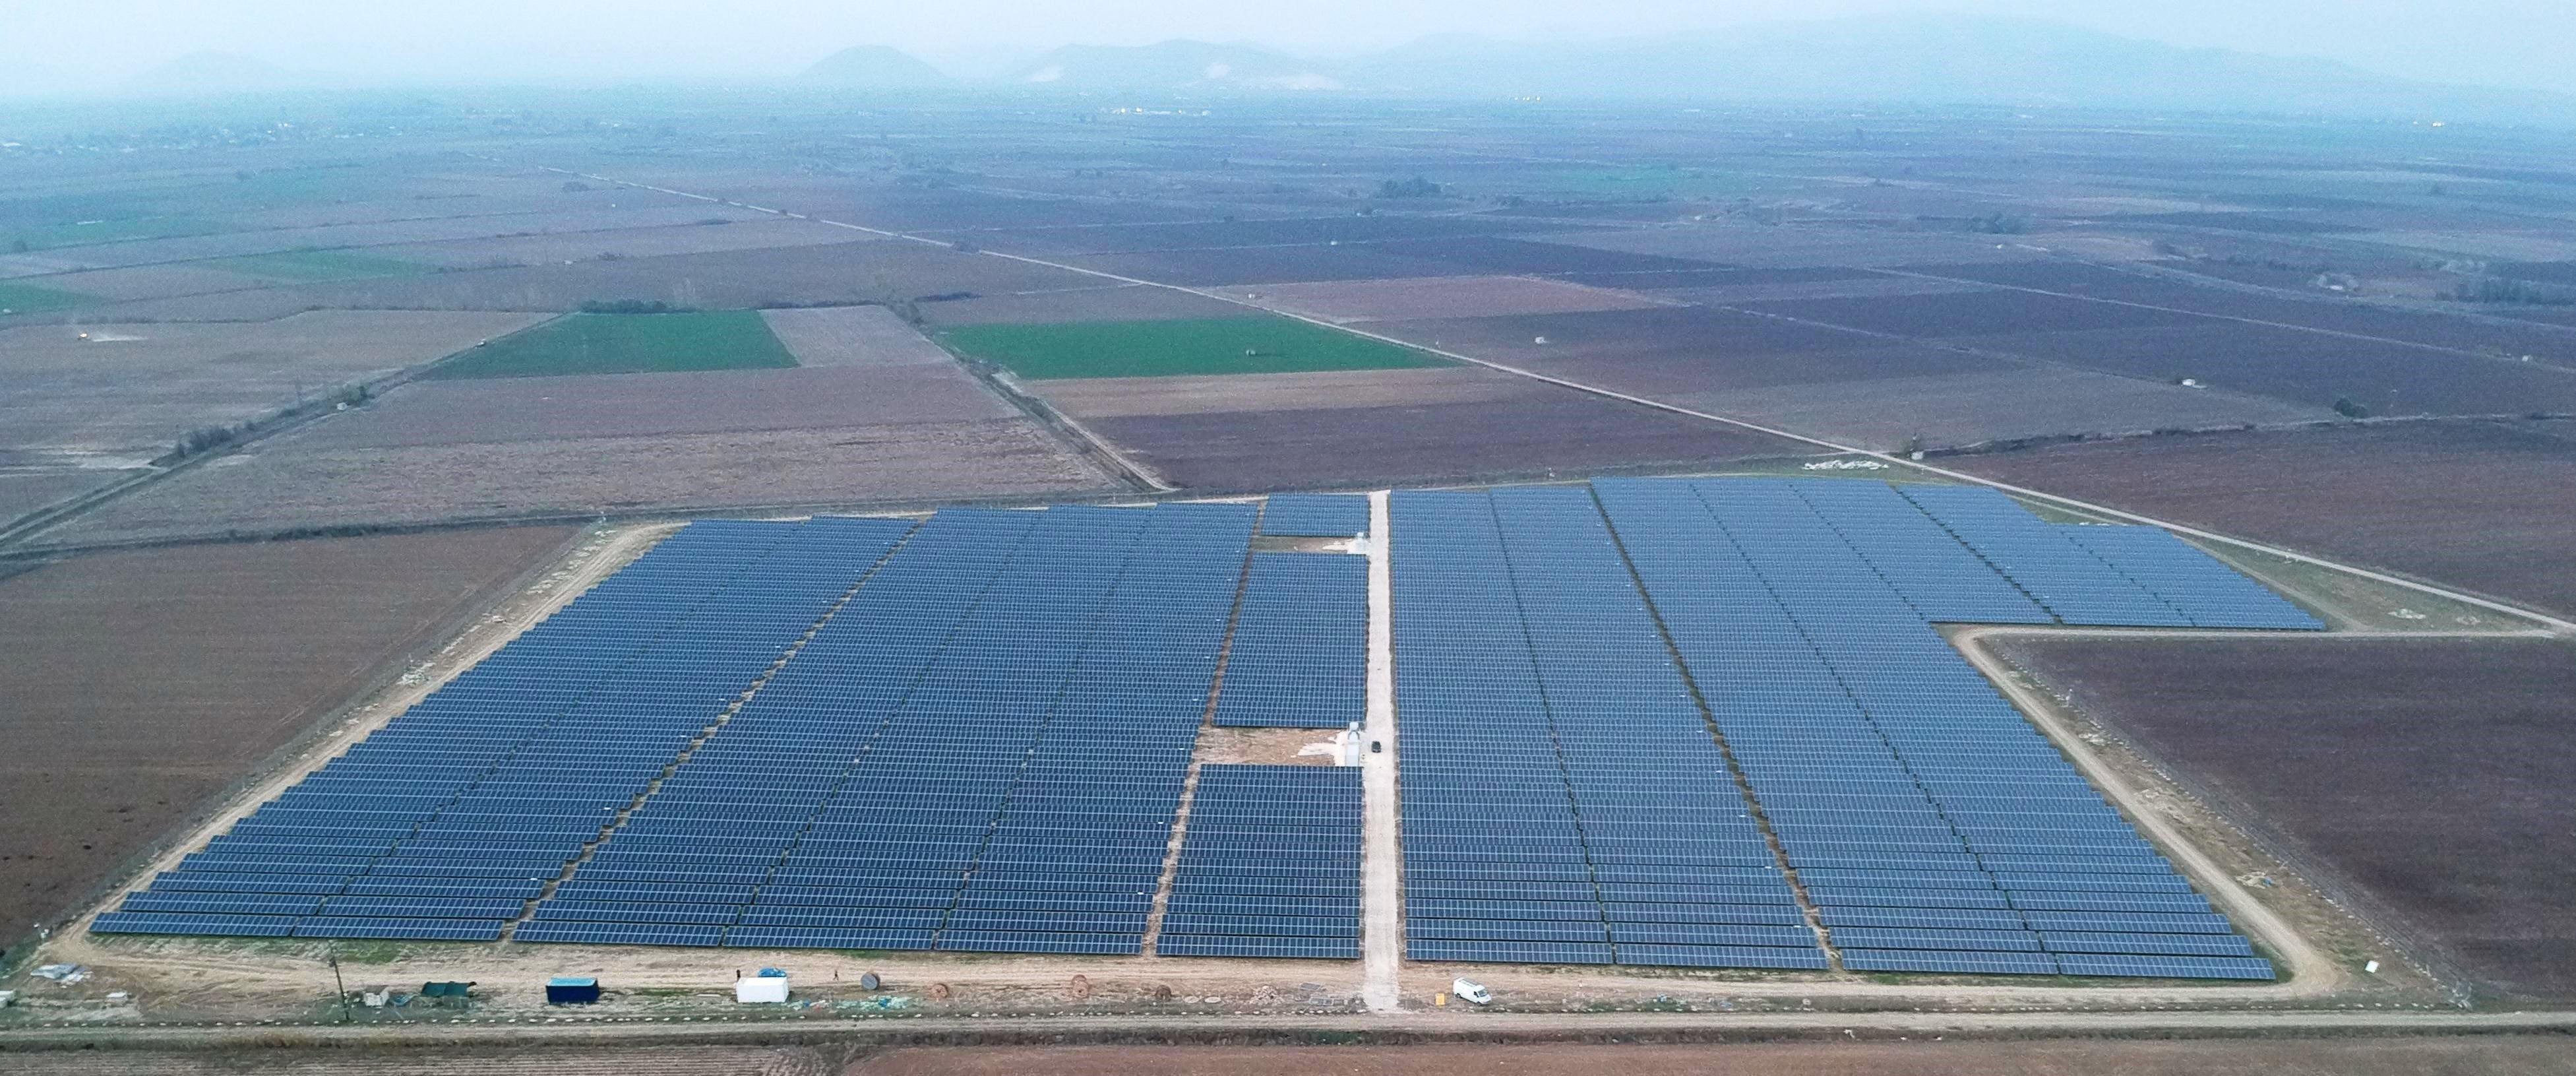 Μία από τις μεγαλύτερες φωτοβολταϊκές μονάδες στην Ελλάδα  εντάσσεται στο χαρτοφυλάκιο της «ΕΛΠΕ Ανανεώσιμες»